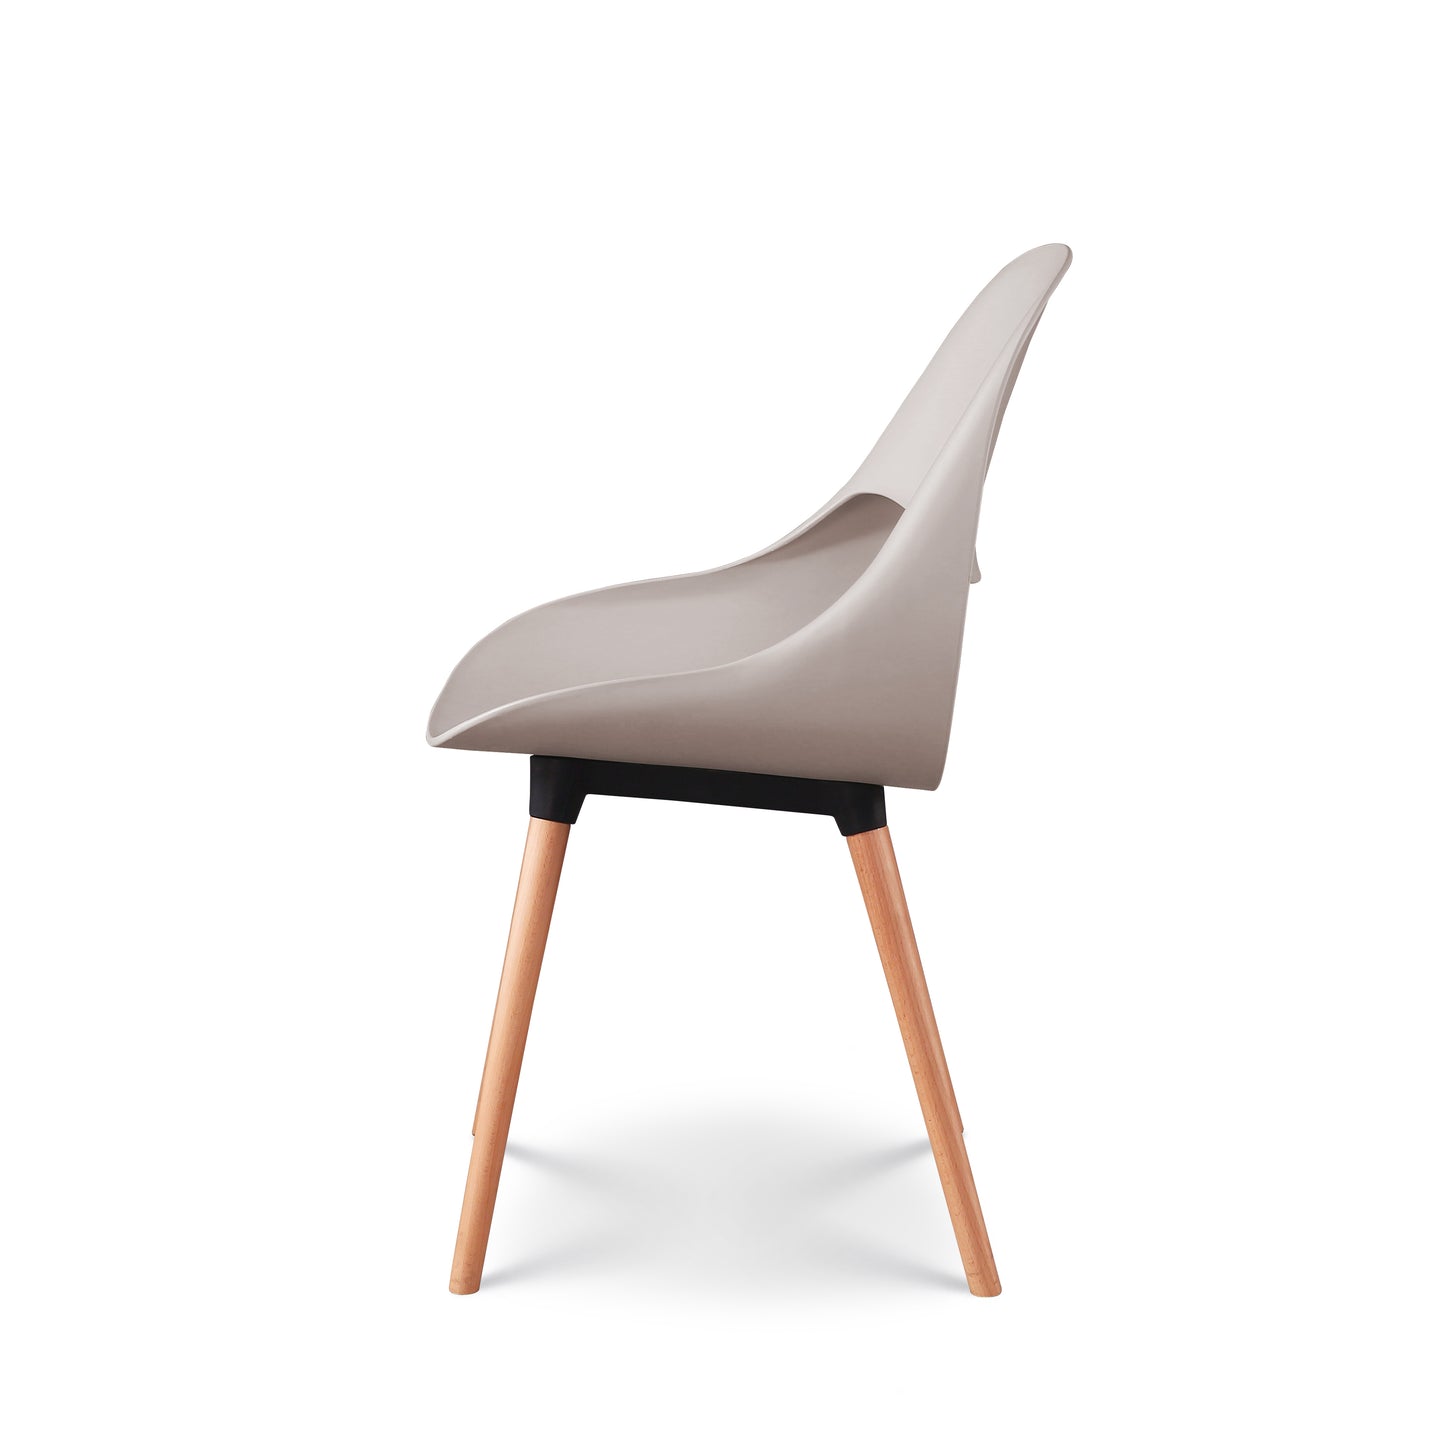 Lot de 4 chaises style scandinave modèle CHLOE - Assise en résine beige et pieds en bois naturel